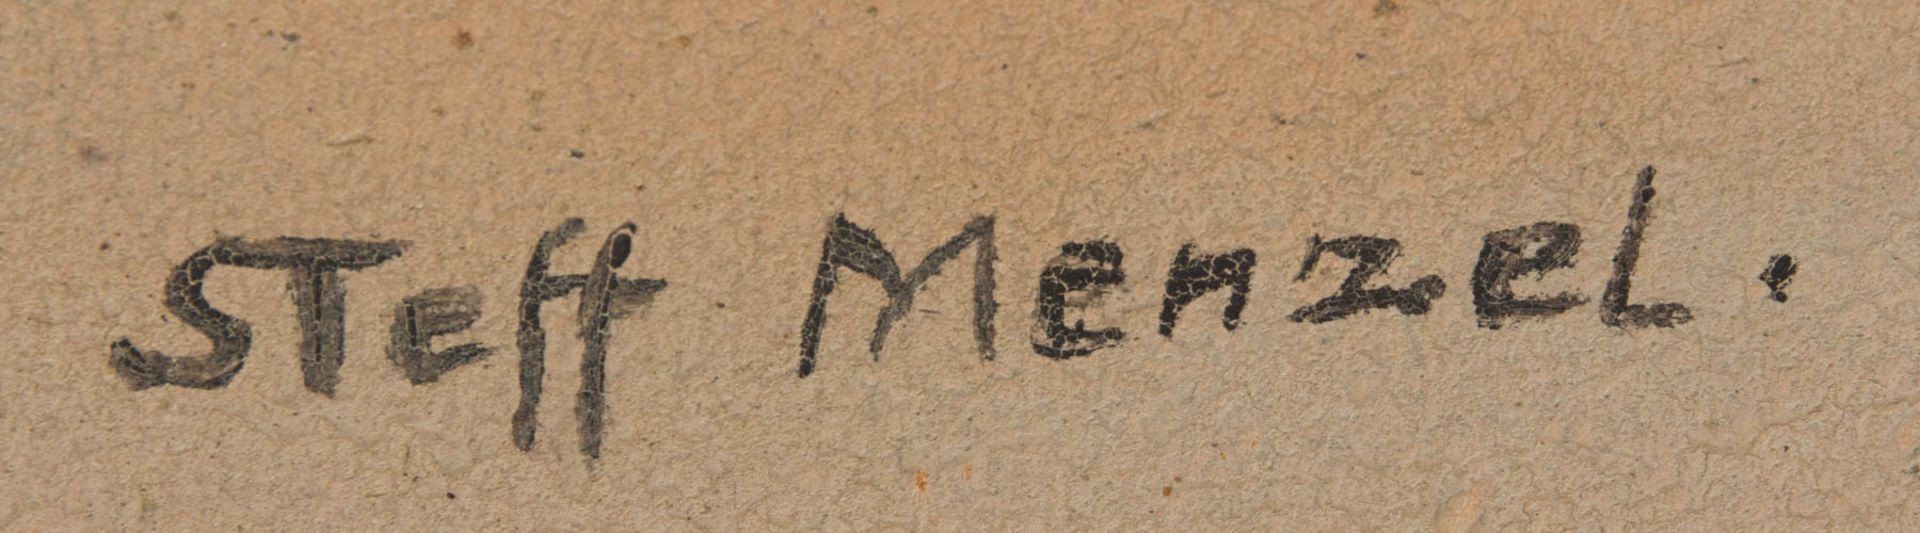 Steff Menzel, Blumenstillleben, Acryl/Karton, 20. JhUnten rechts signiert. 61 x 77 cm o.R.83 x 100 - Bild 3 aus 5